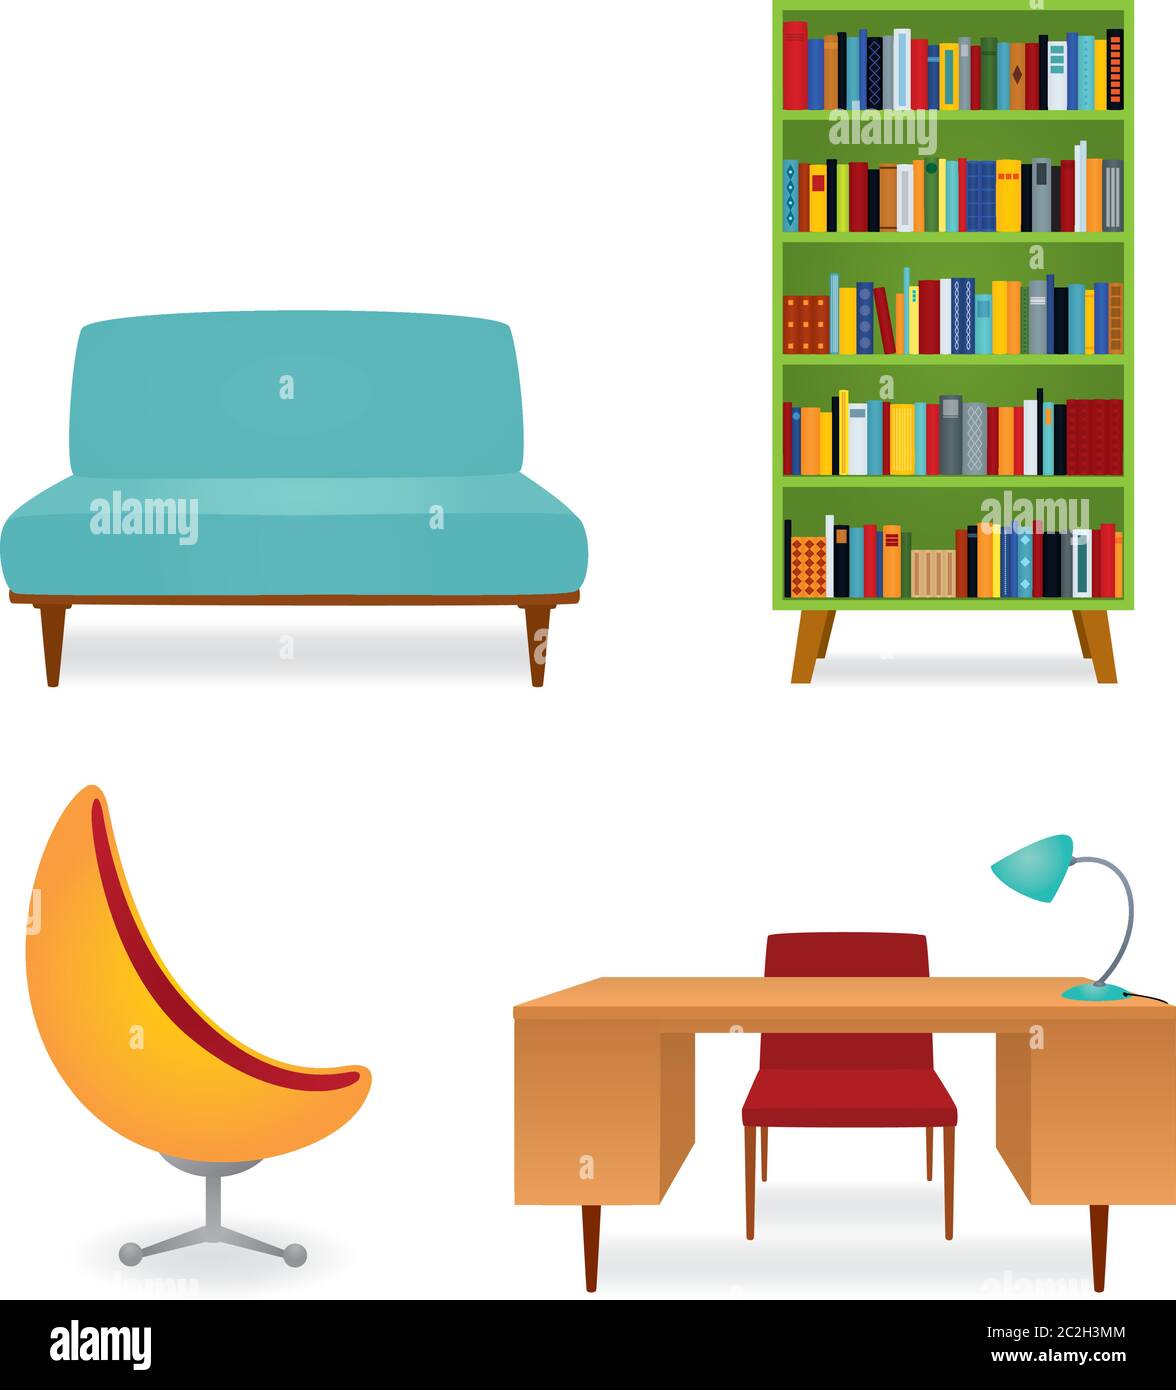 Vektor-Illustration, eine Kollektion von Möbeln im Stil der 70er Jahre. Bücherregal voller Bücher, Couch, Schreibtisch und Sessel. Isoliert auf Weiß. Stock Vektor